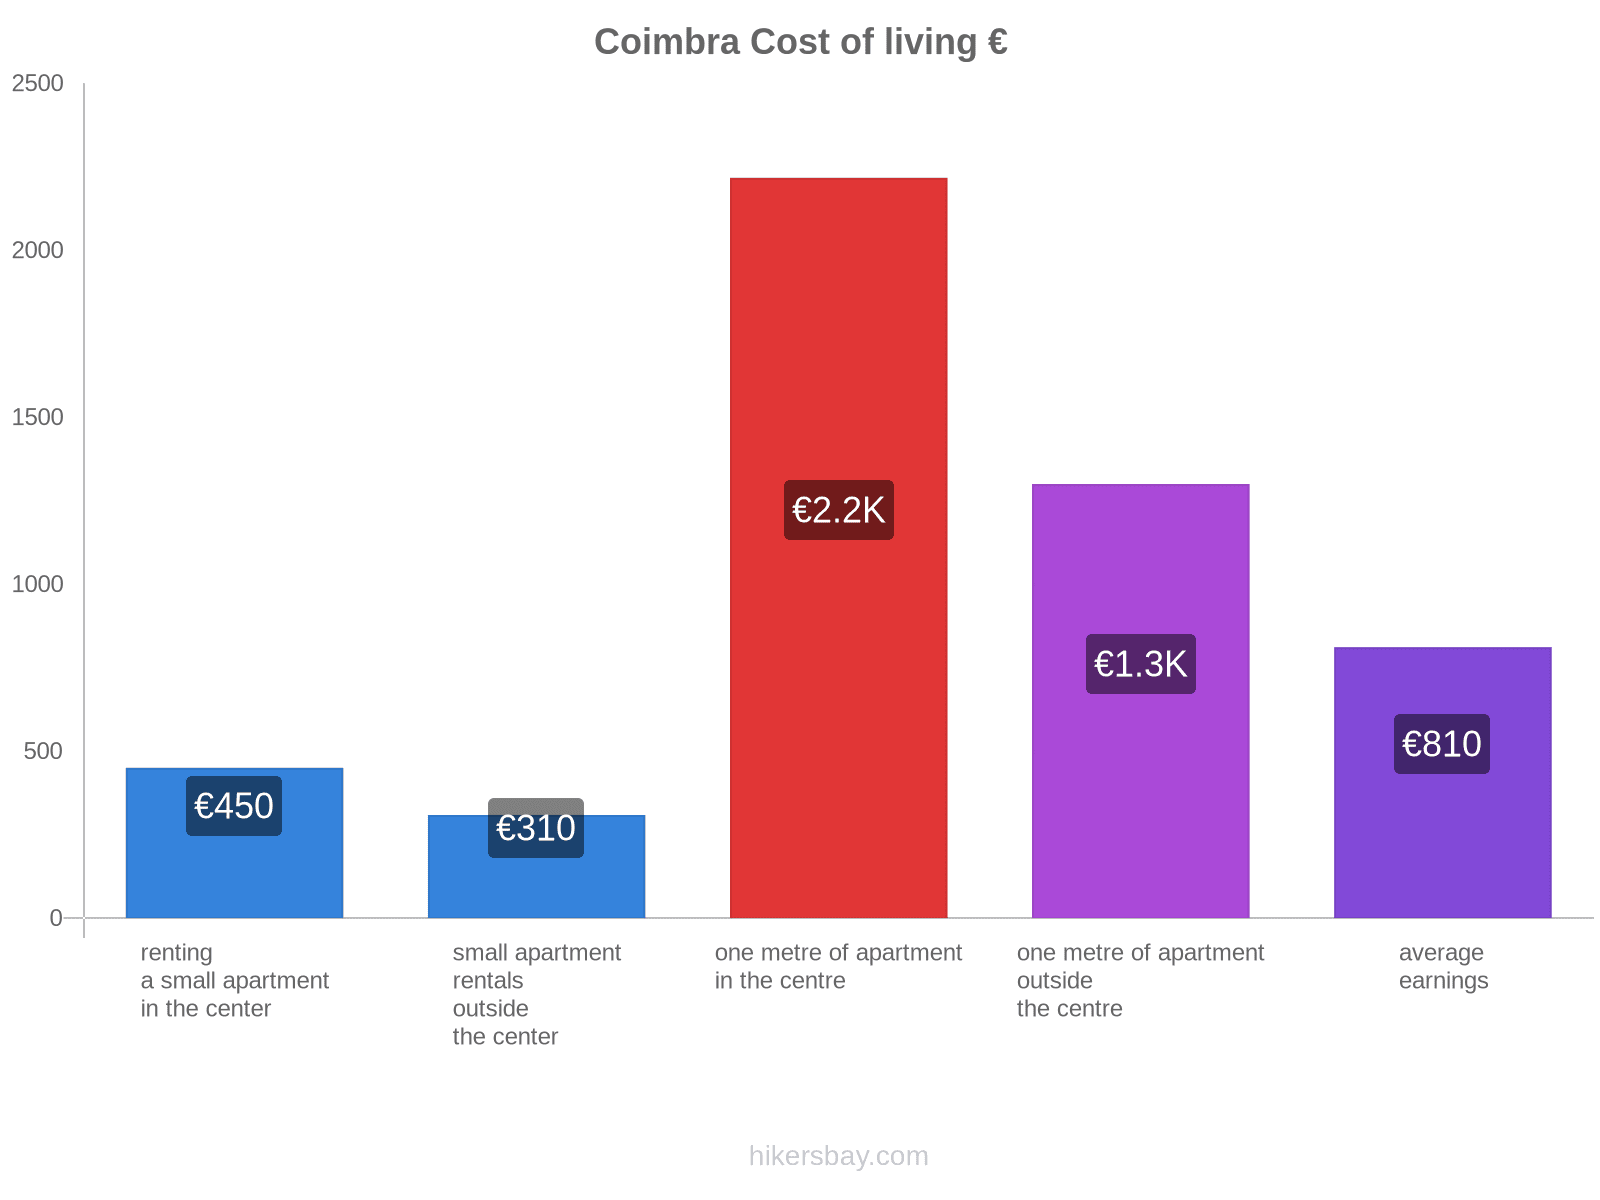 Coimbra cost of living hikersbay.com